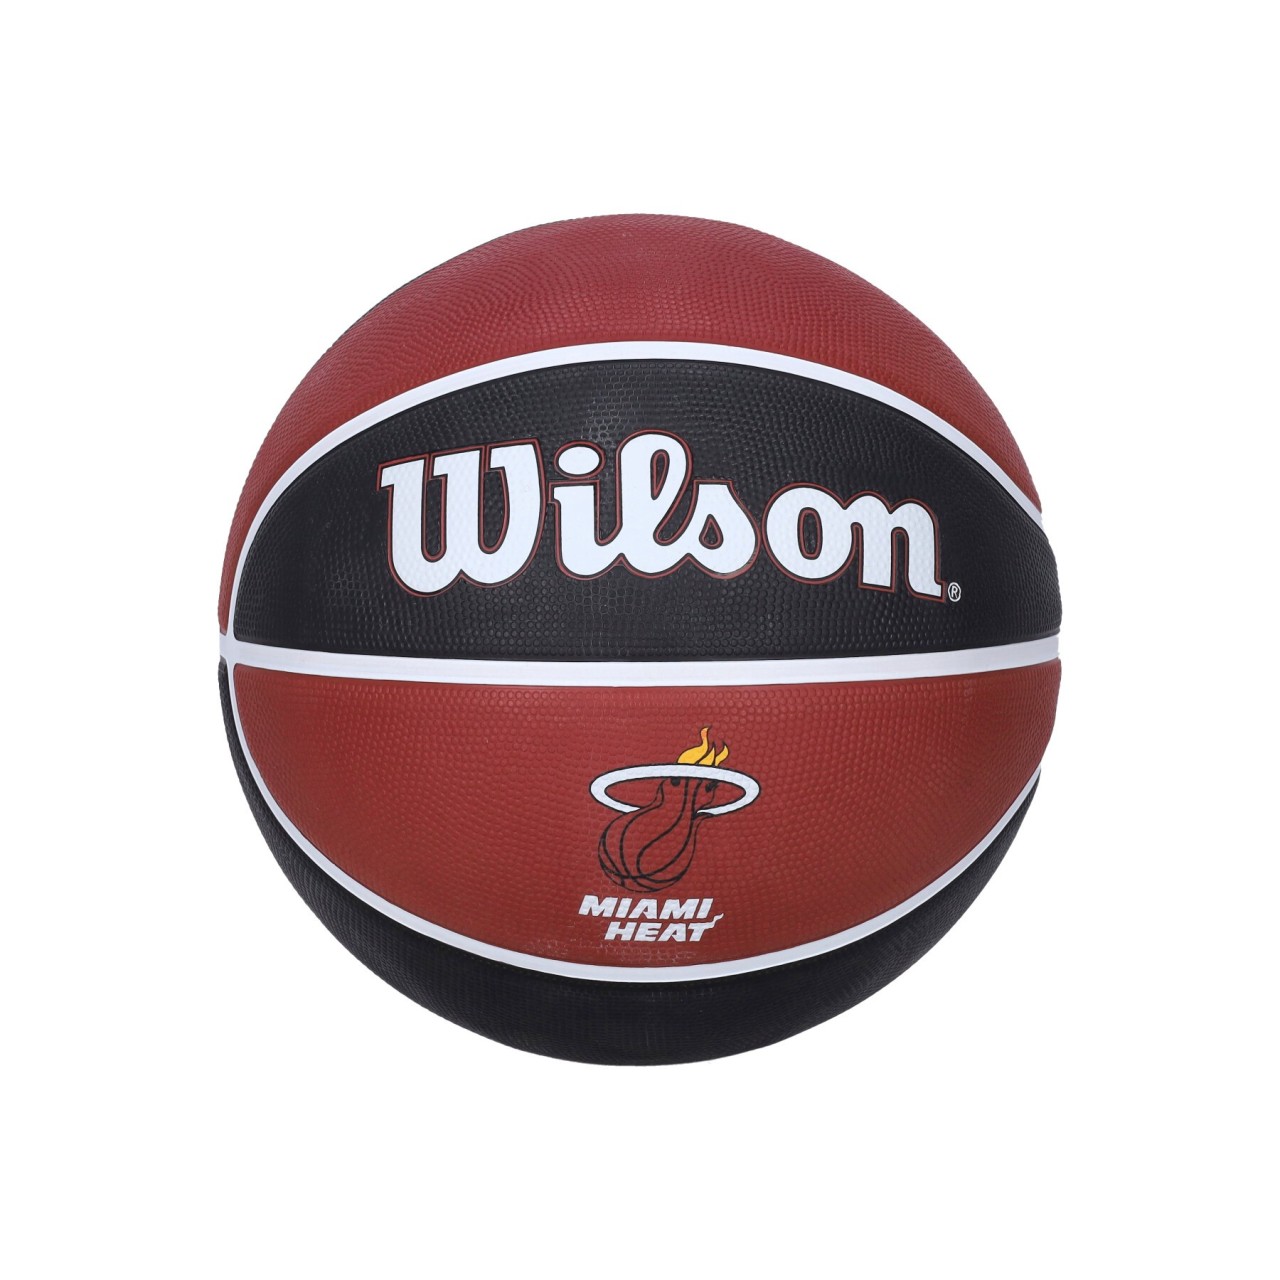 WILSON TEAM NBA TEAM TRIBUTE BASKETBALL SIZE 7 MIAHEA WTB1300XBMIA